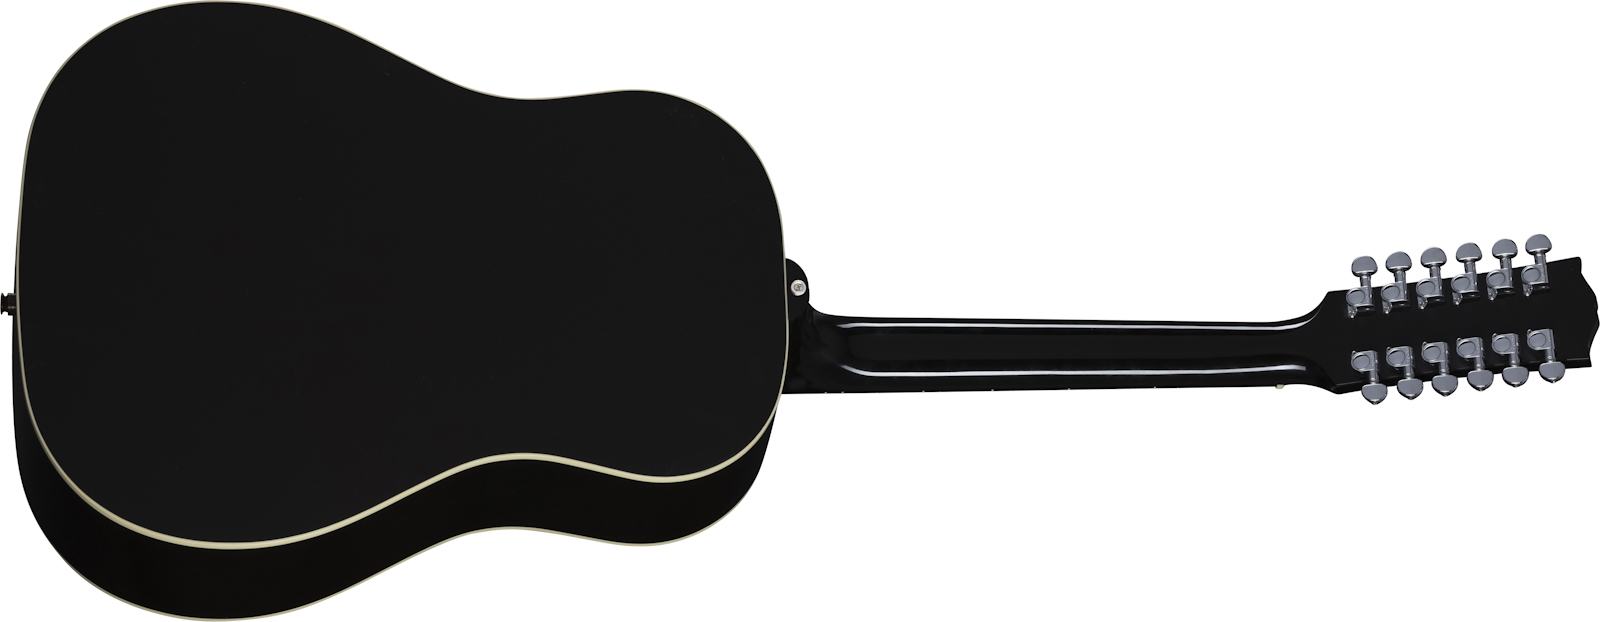 Gibson J-45 Standard 12-string Modern Dreadnought 12c Epicea Acajou Rw - Vintage Sunburst - Elektro-akoestische gitaar - Variation 1